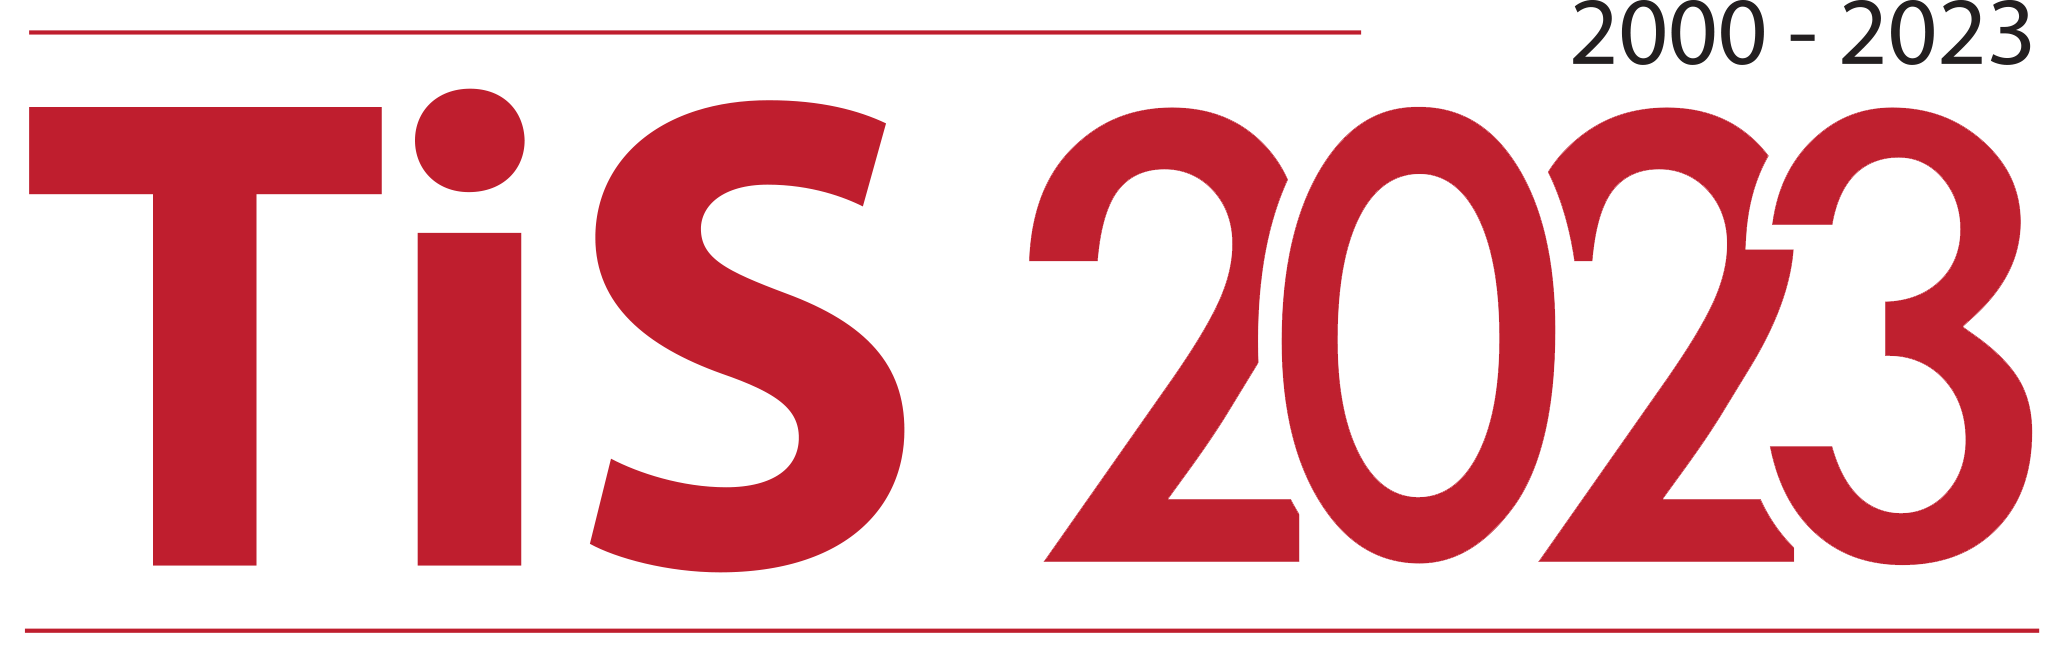 TiS-2023-logo-red.png